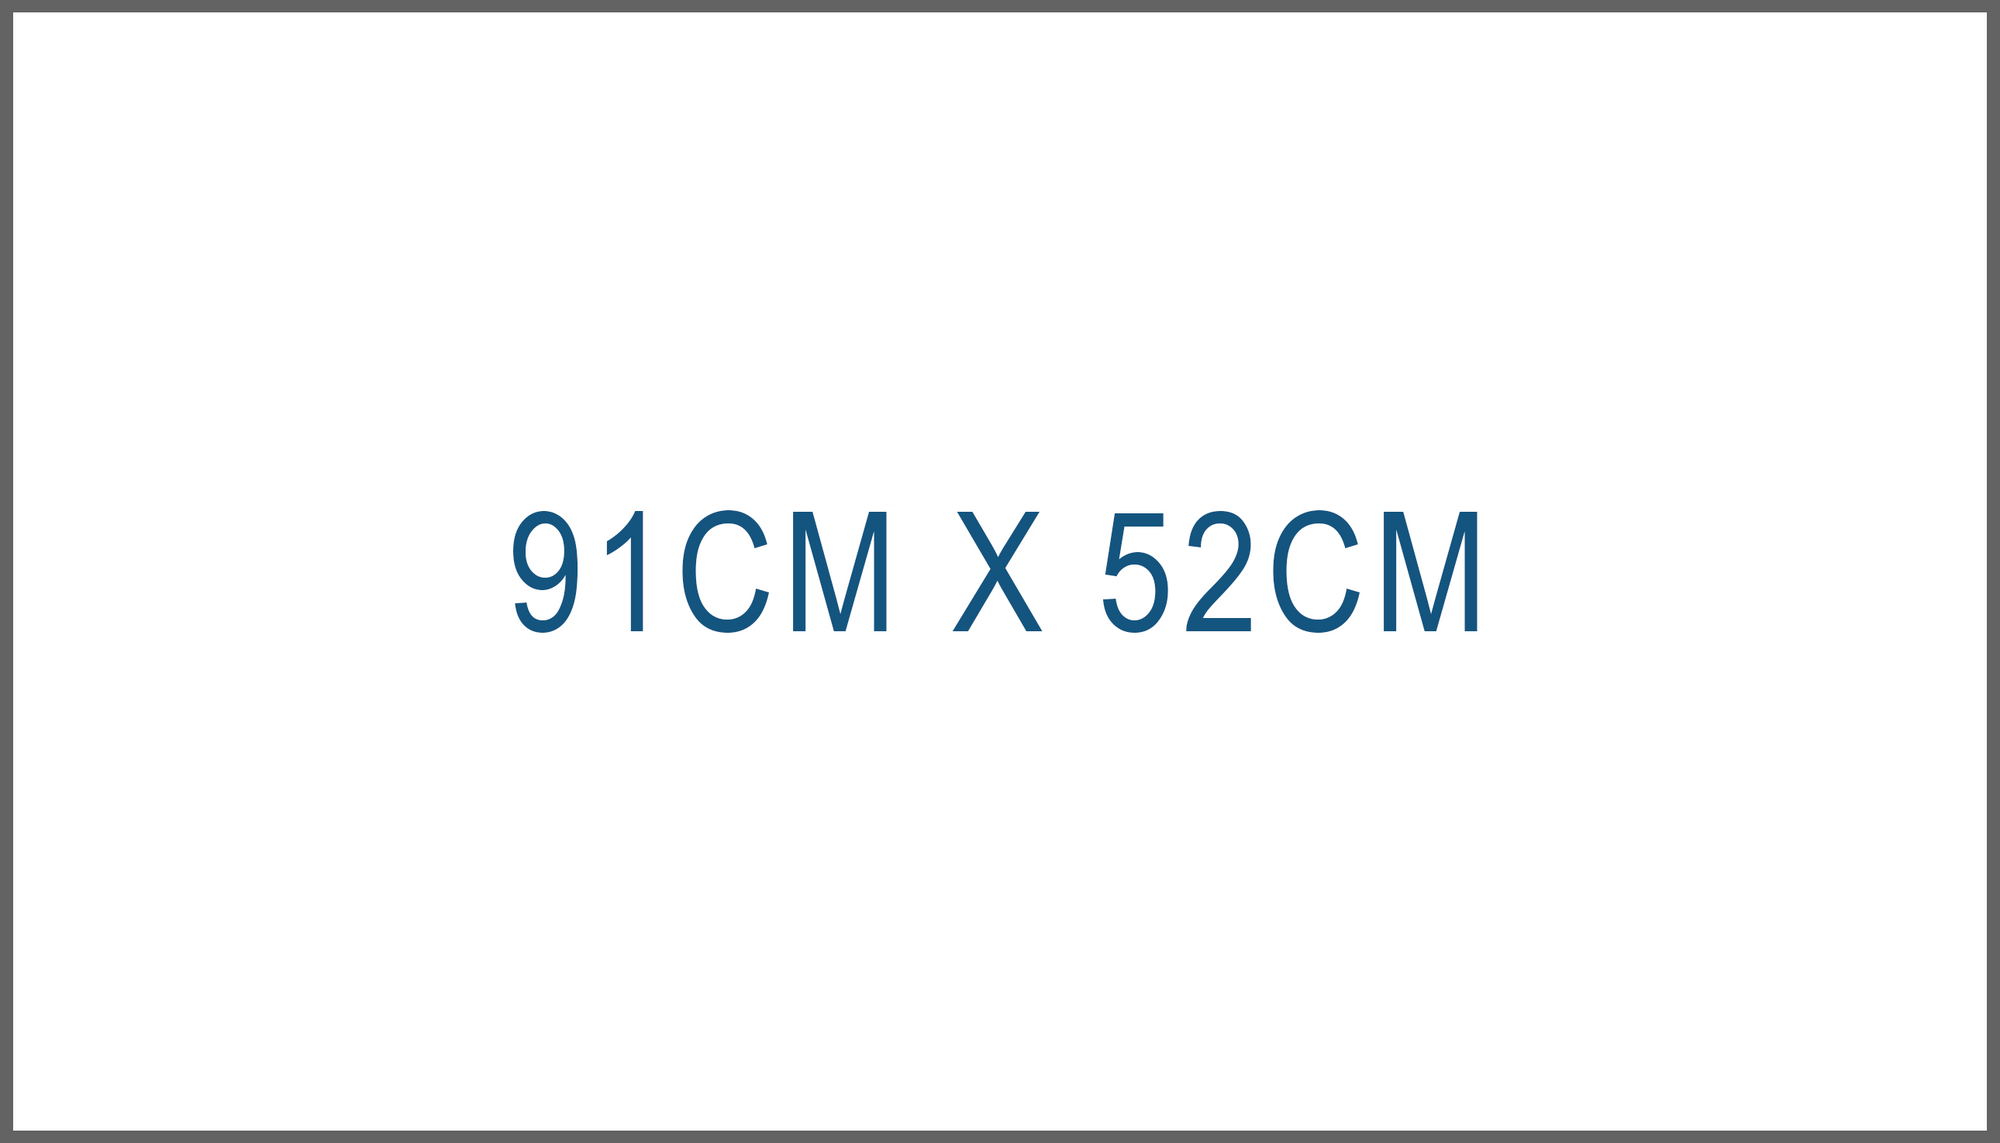 91cm X 52cm Vinyl Outdoor Banner